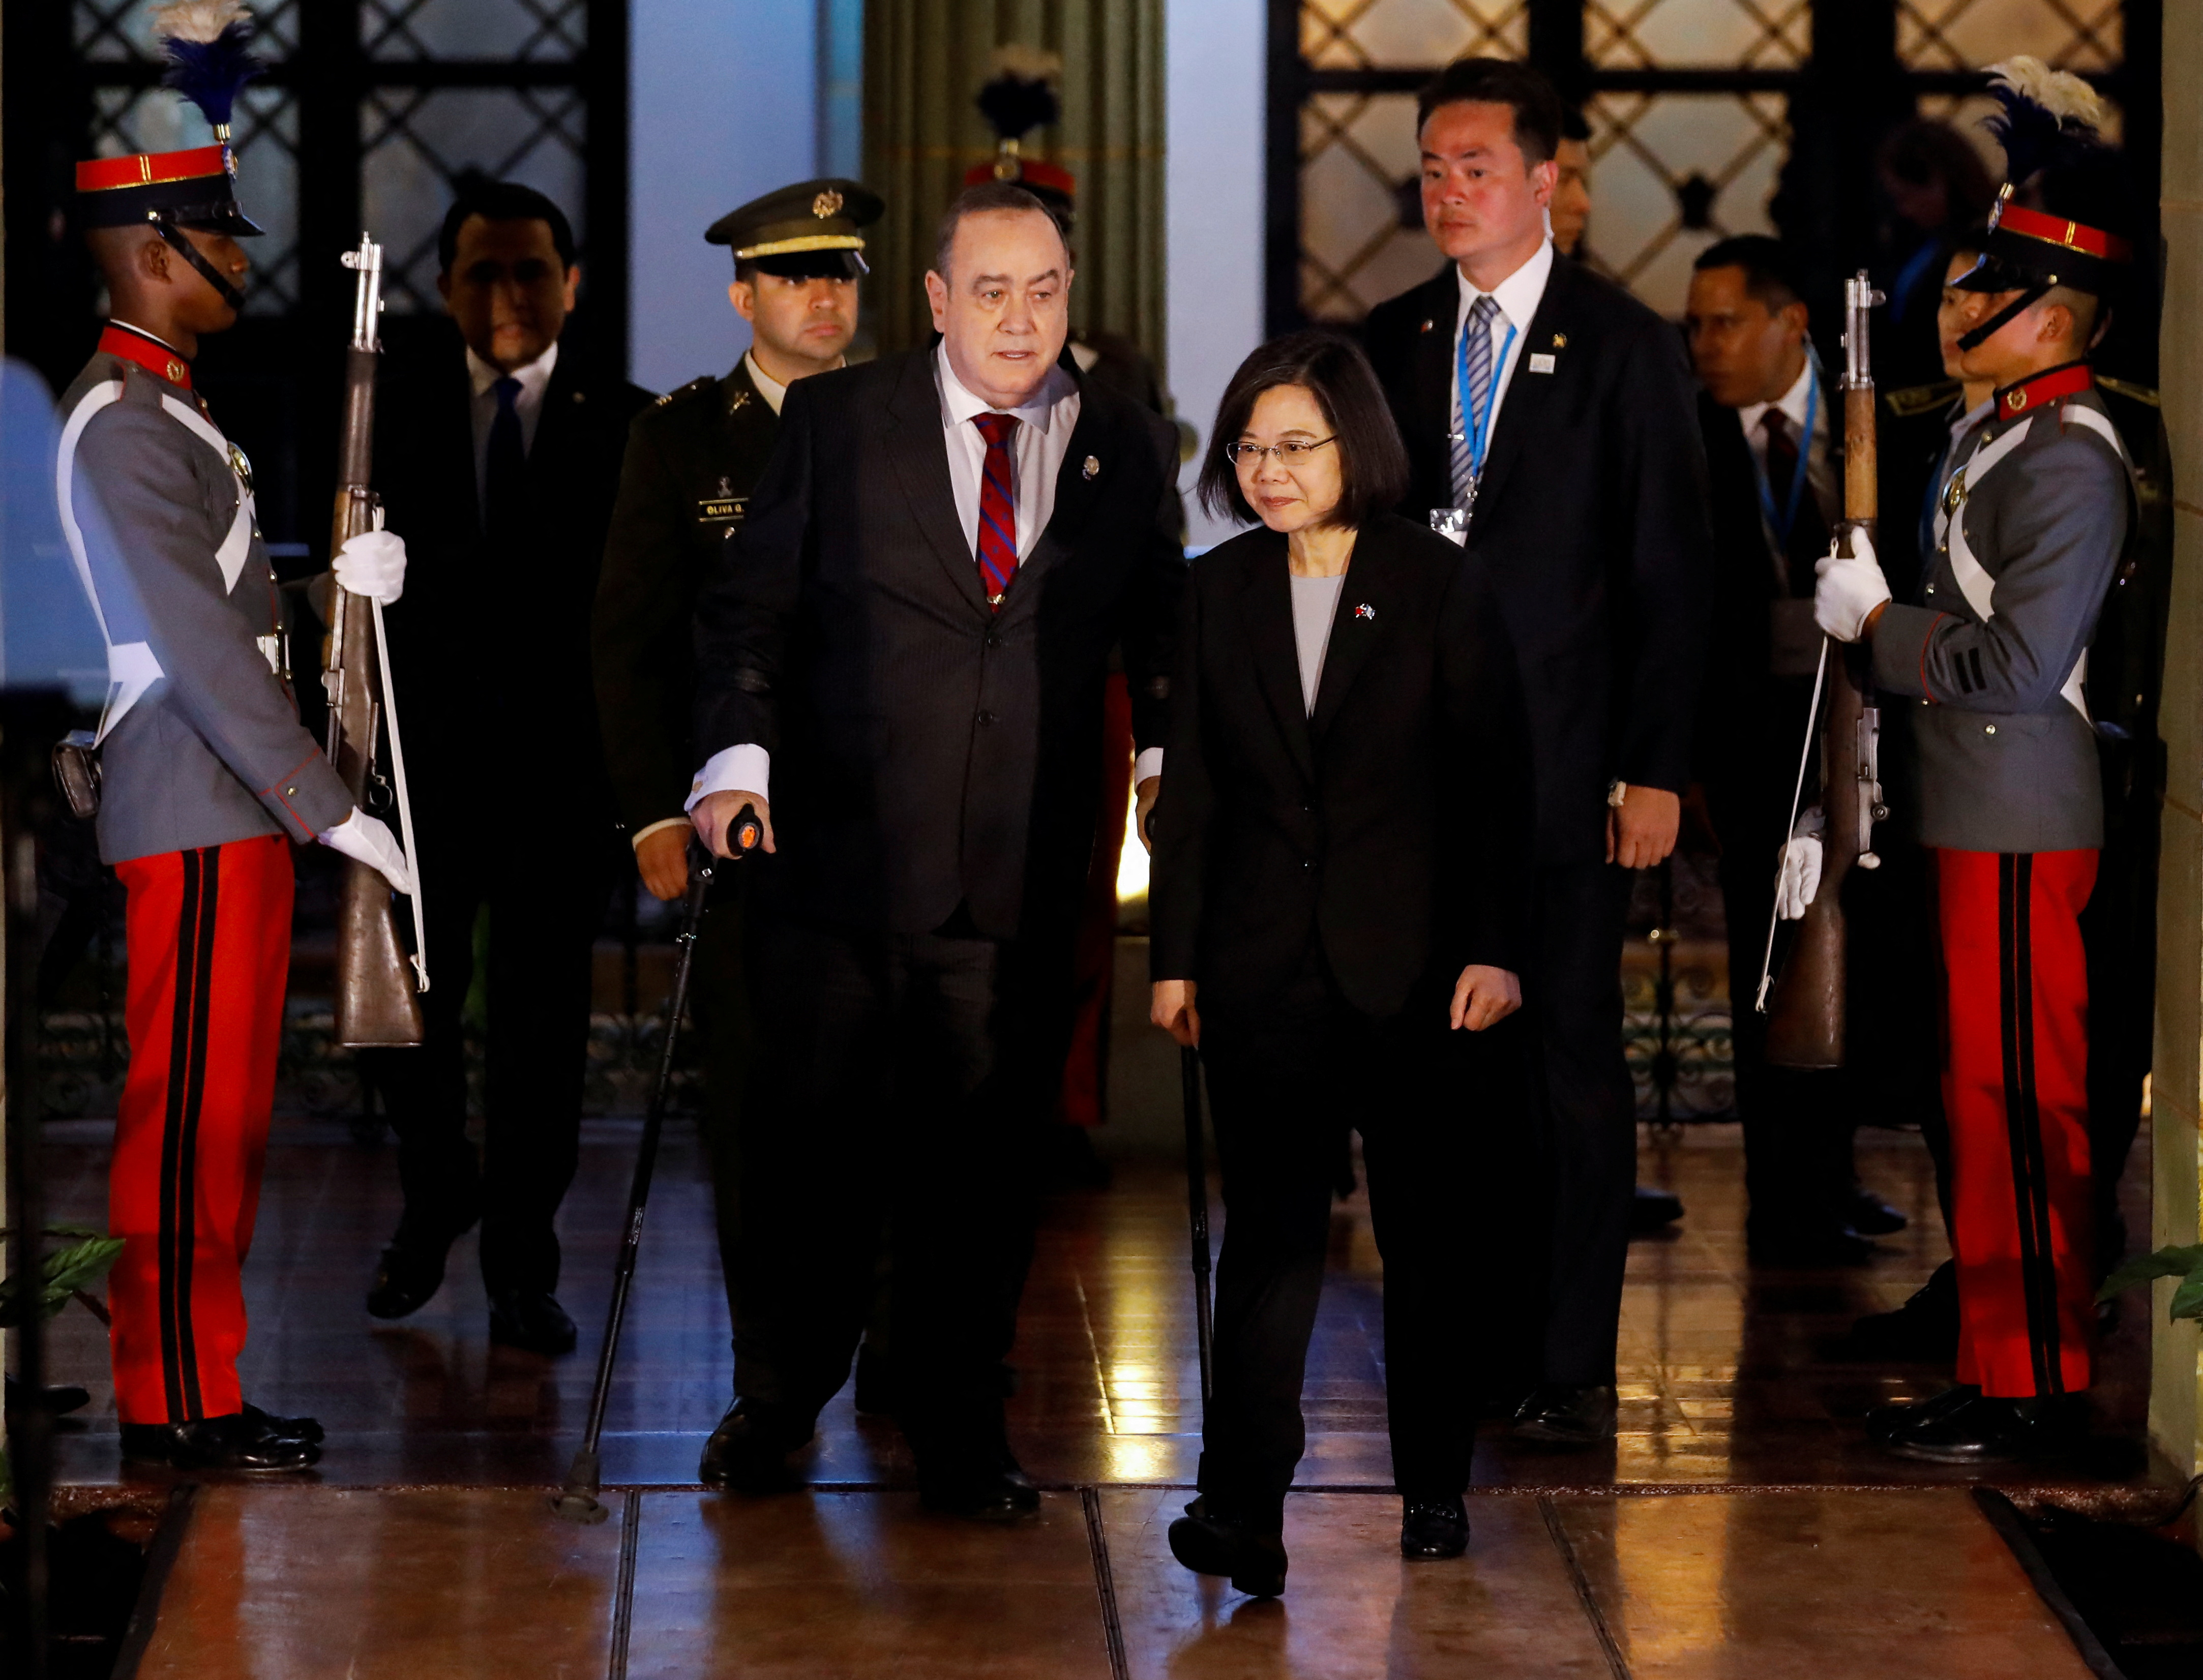 Taiwán agradeció el respaldo del gobierno de Guatemala ante las amenazas del régimen chino en la región. (REUTERS)